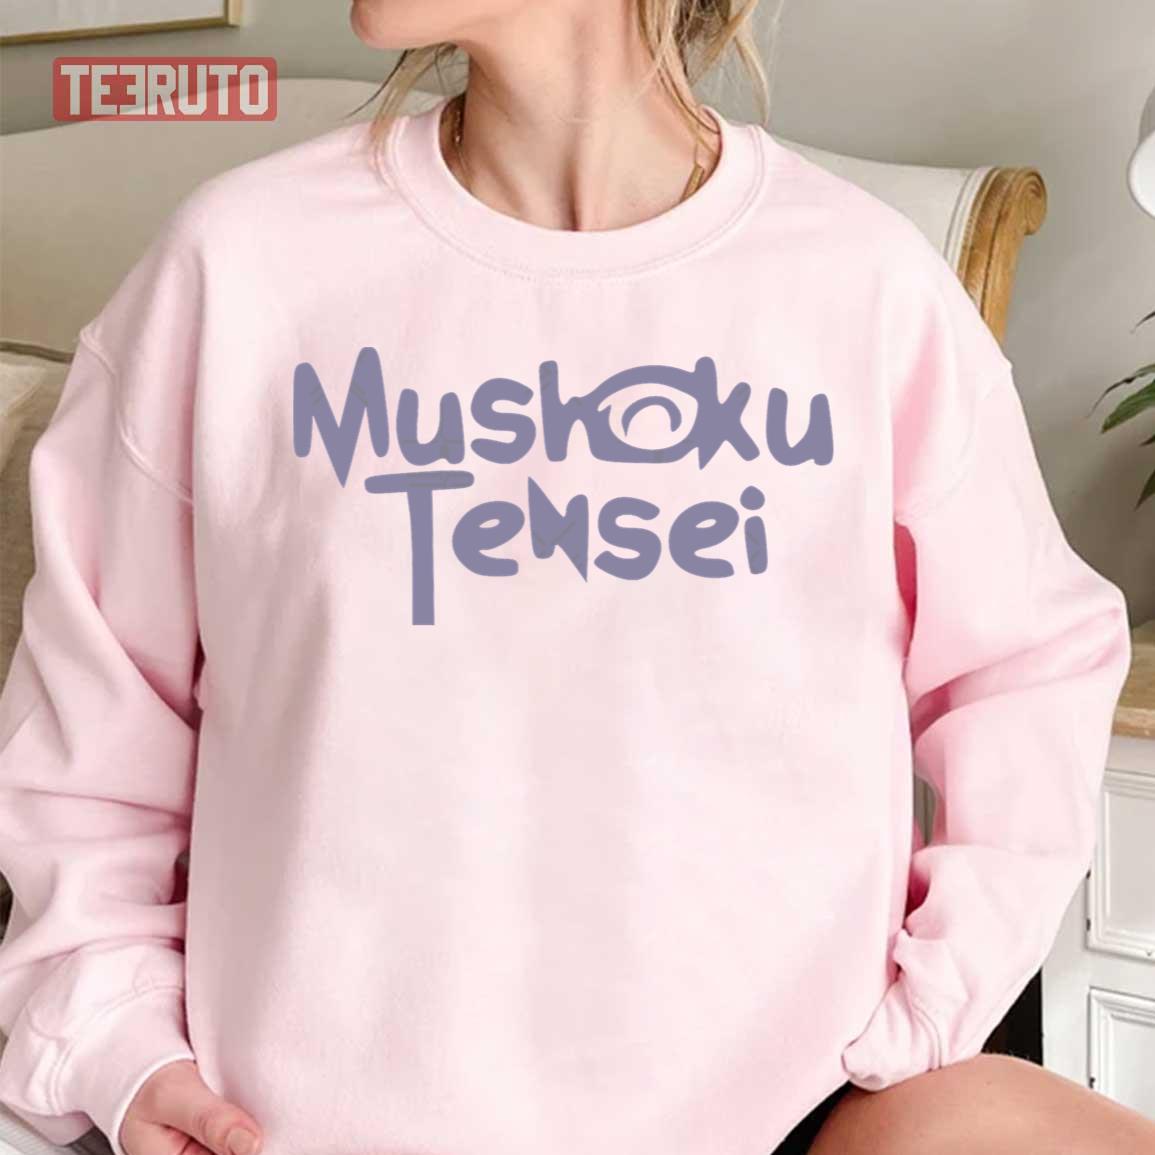 Mushoku Tensei Logo Text Unisex T-Shirt